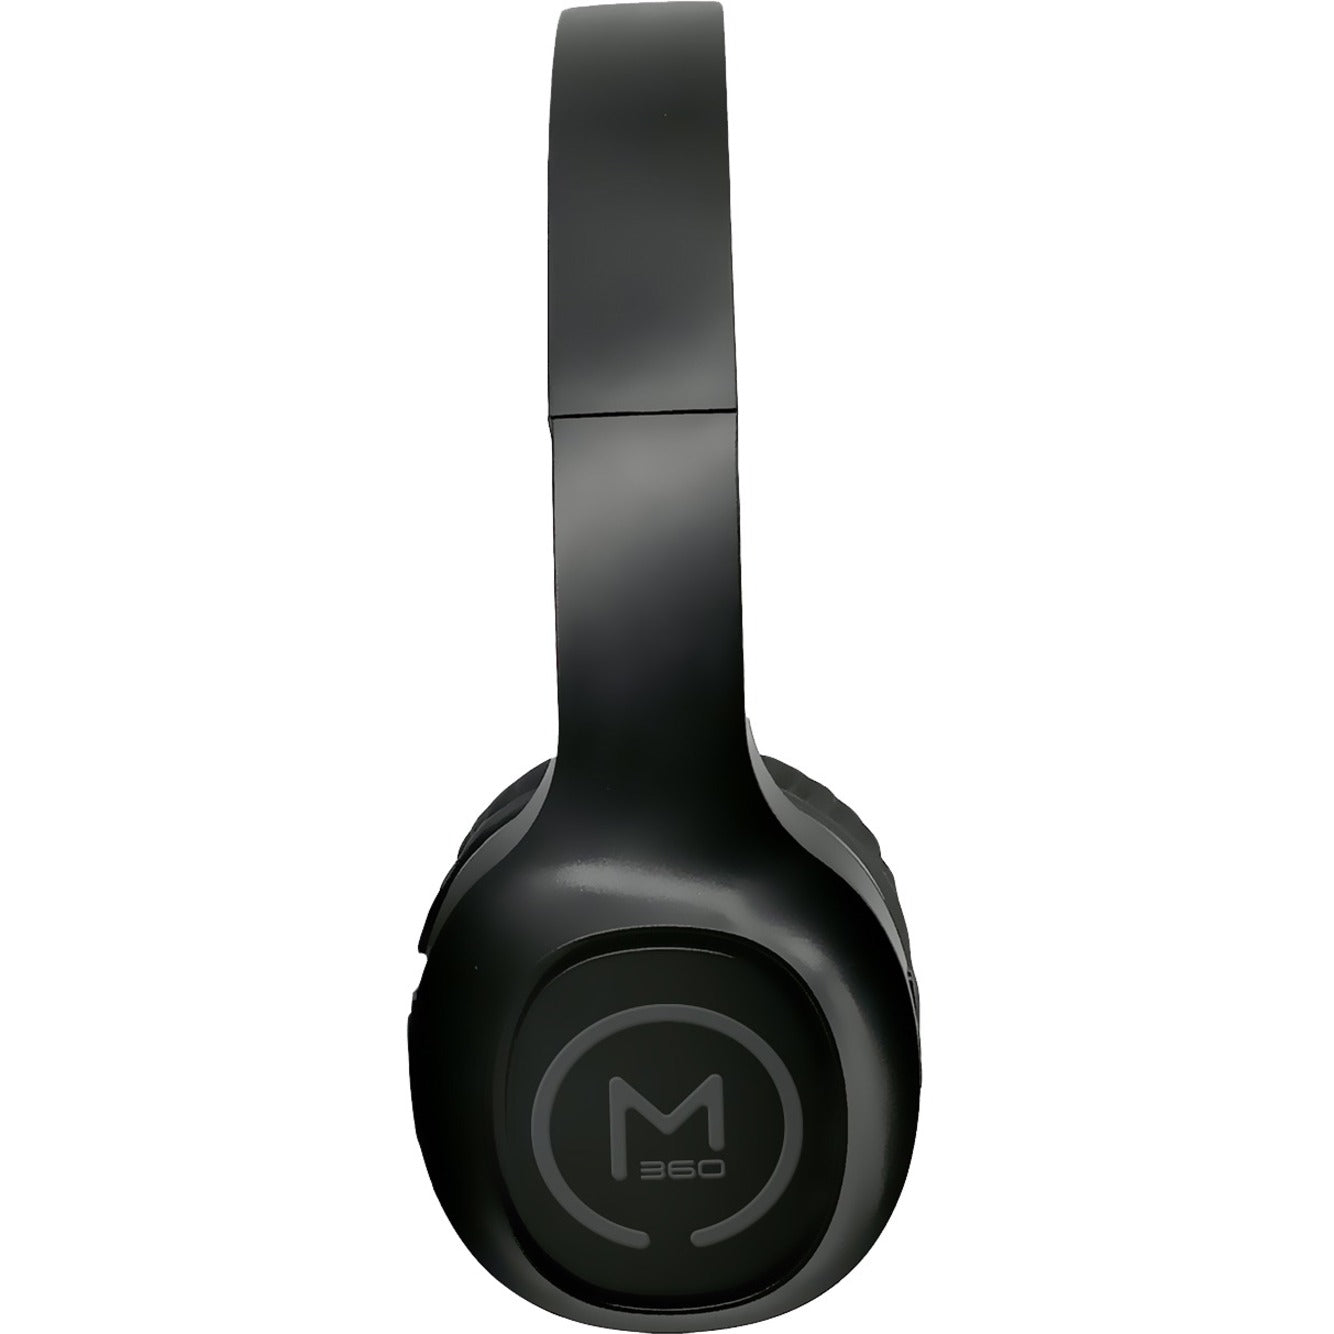 مورفيوس 360 إتش بي 4500ب سماعة لاسلكية، ستيريو، مريحة، أسود مع تفاصيل رمادية شركة: Morpheus